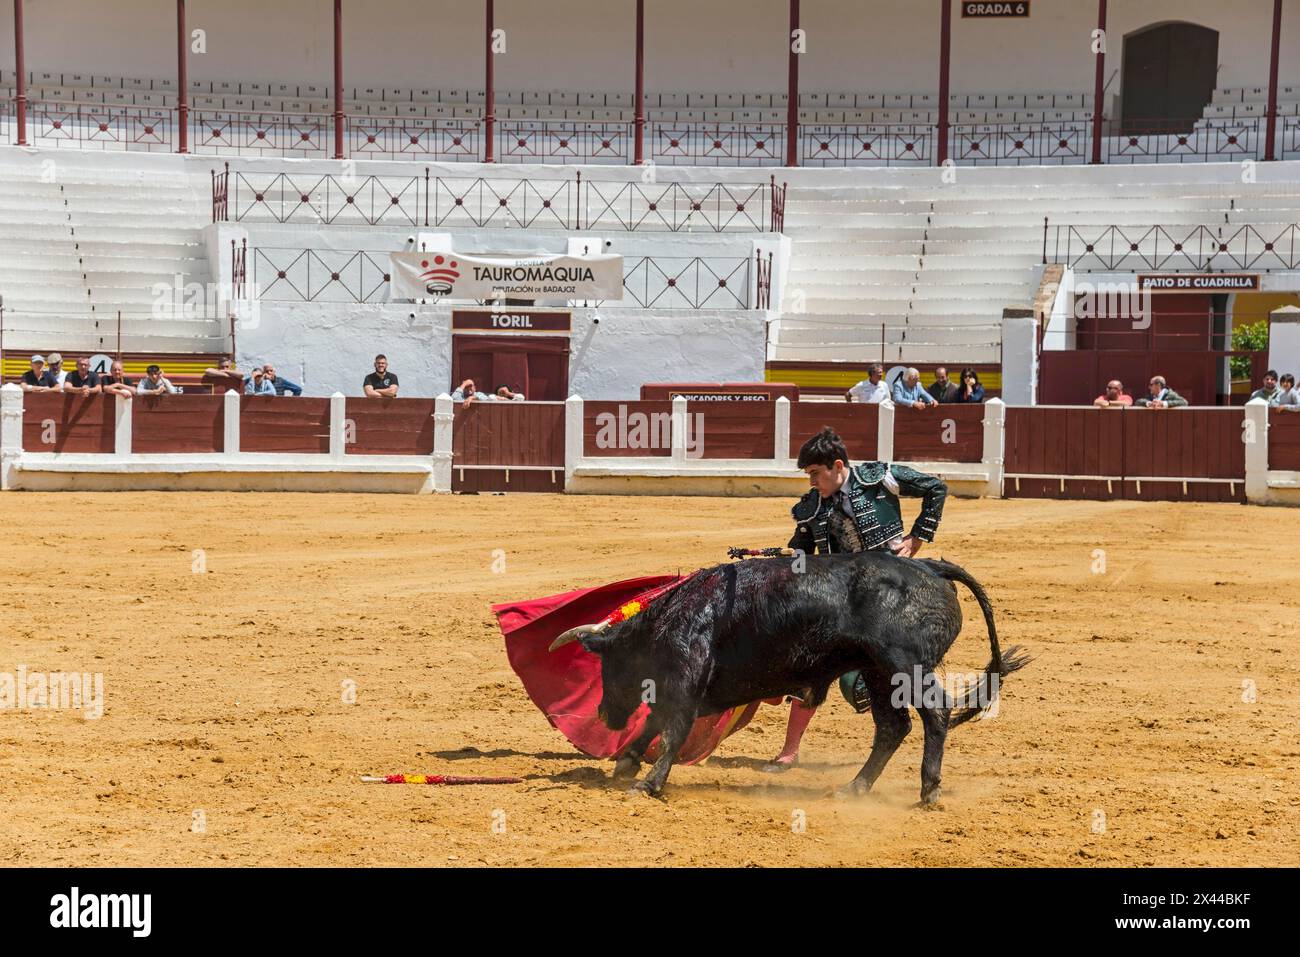 Matador en action avec un taureau dans une arène de tauromachie, scène dynamique, tauromachie, arène de tauromachie, Merida, Badajoz, Estrémadure, Espagne Banque D'Images